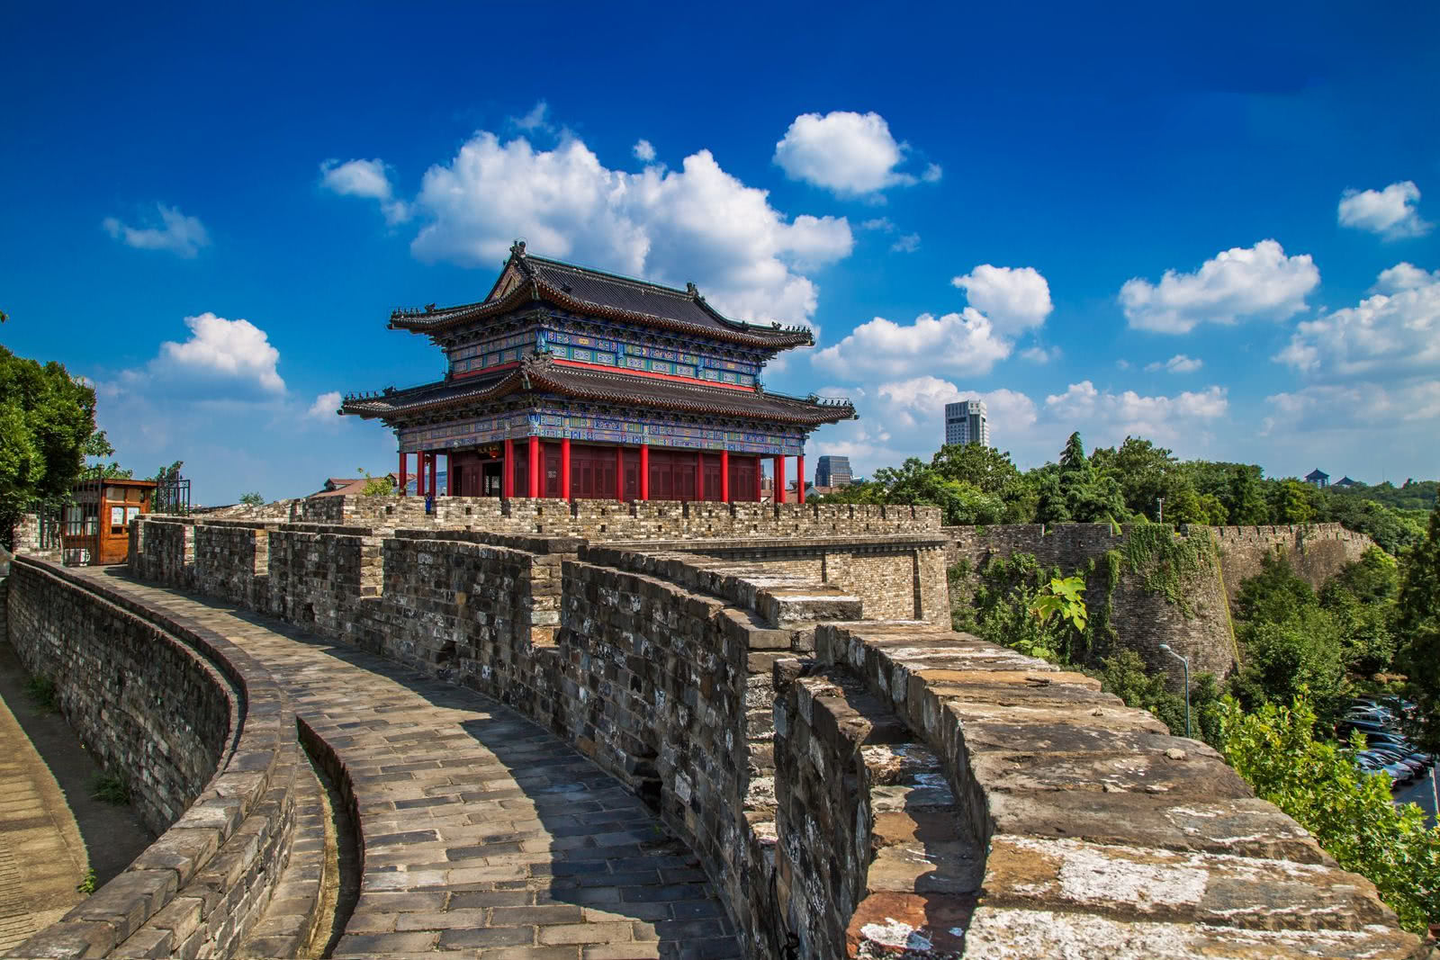 【携程攻略】保定腰山王氏庄园景点,腰山王氏庄园是中国古建筑史上一处罕见的超规制清代城堡式民居建筑群…